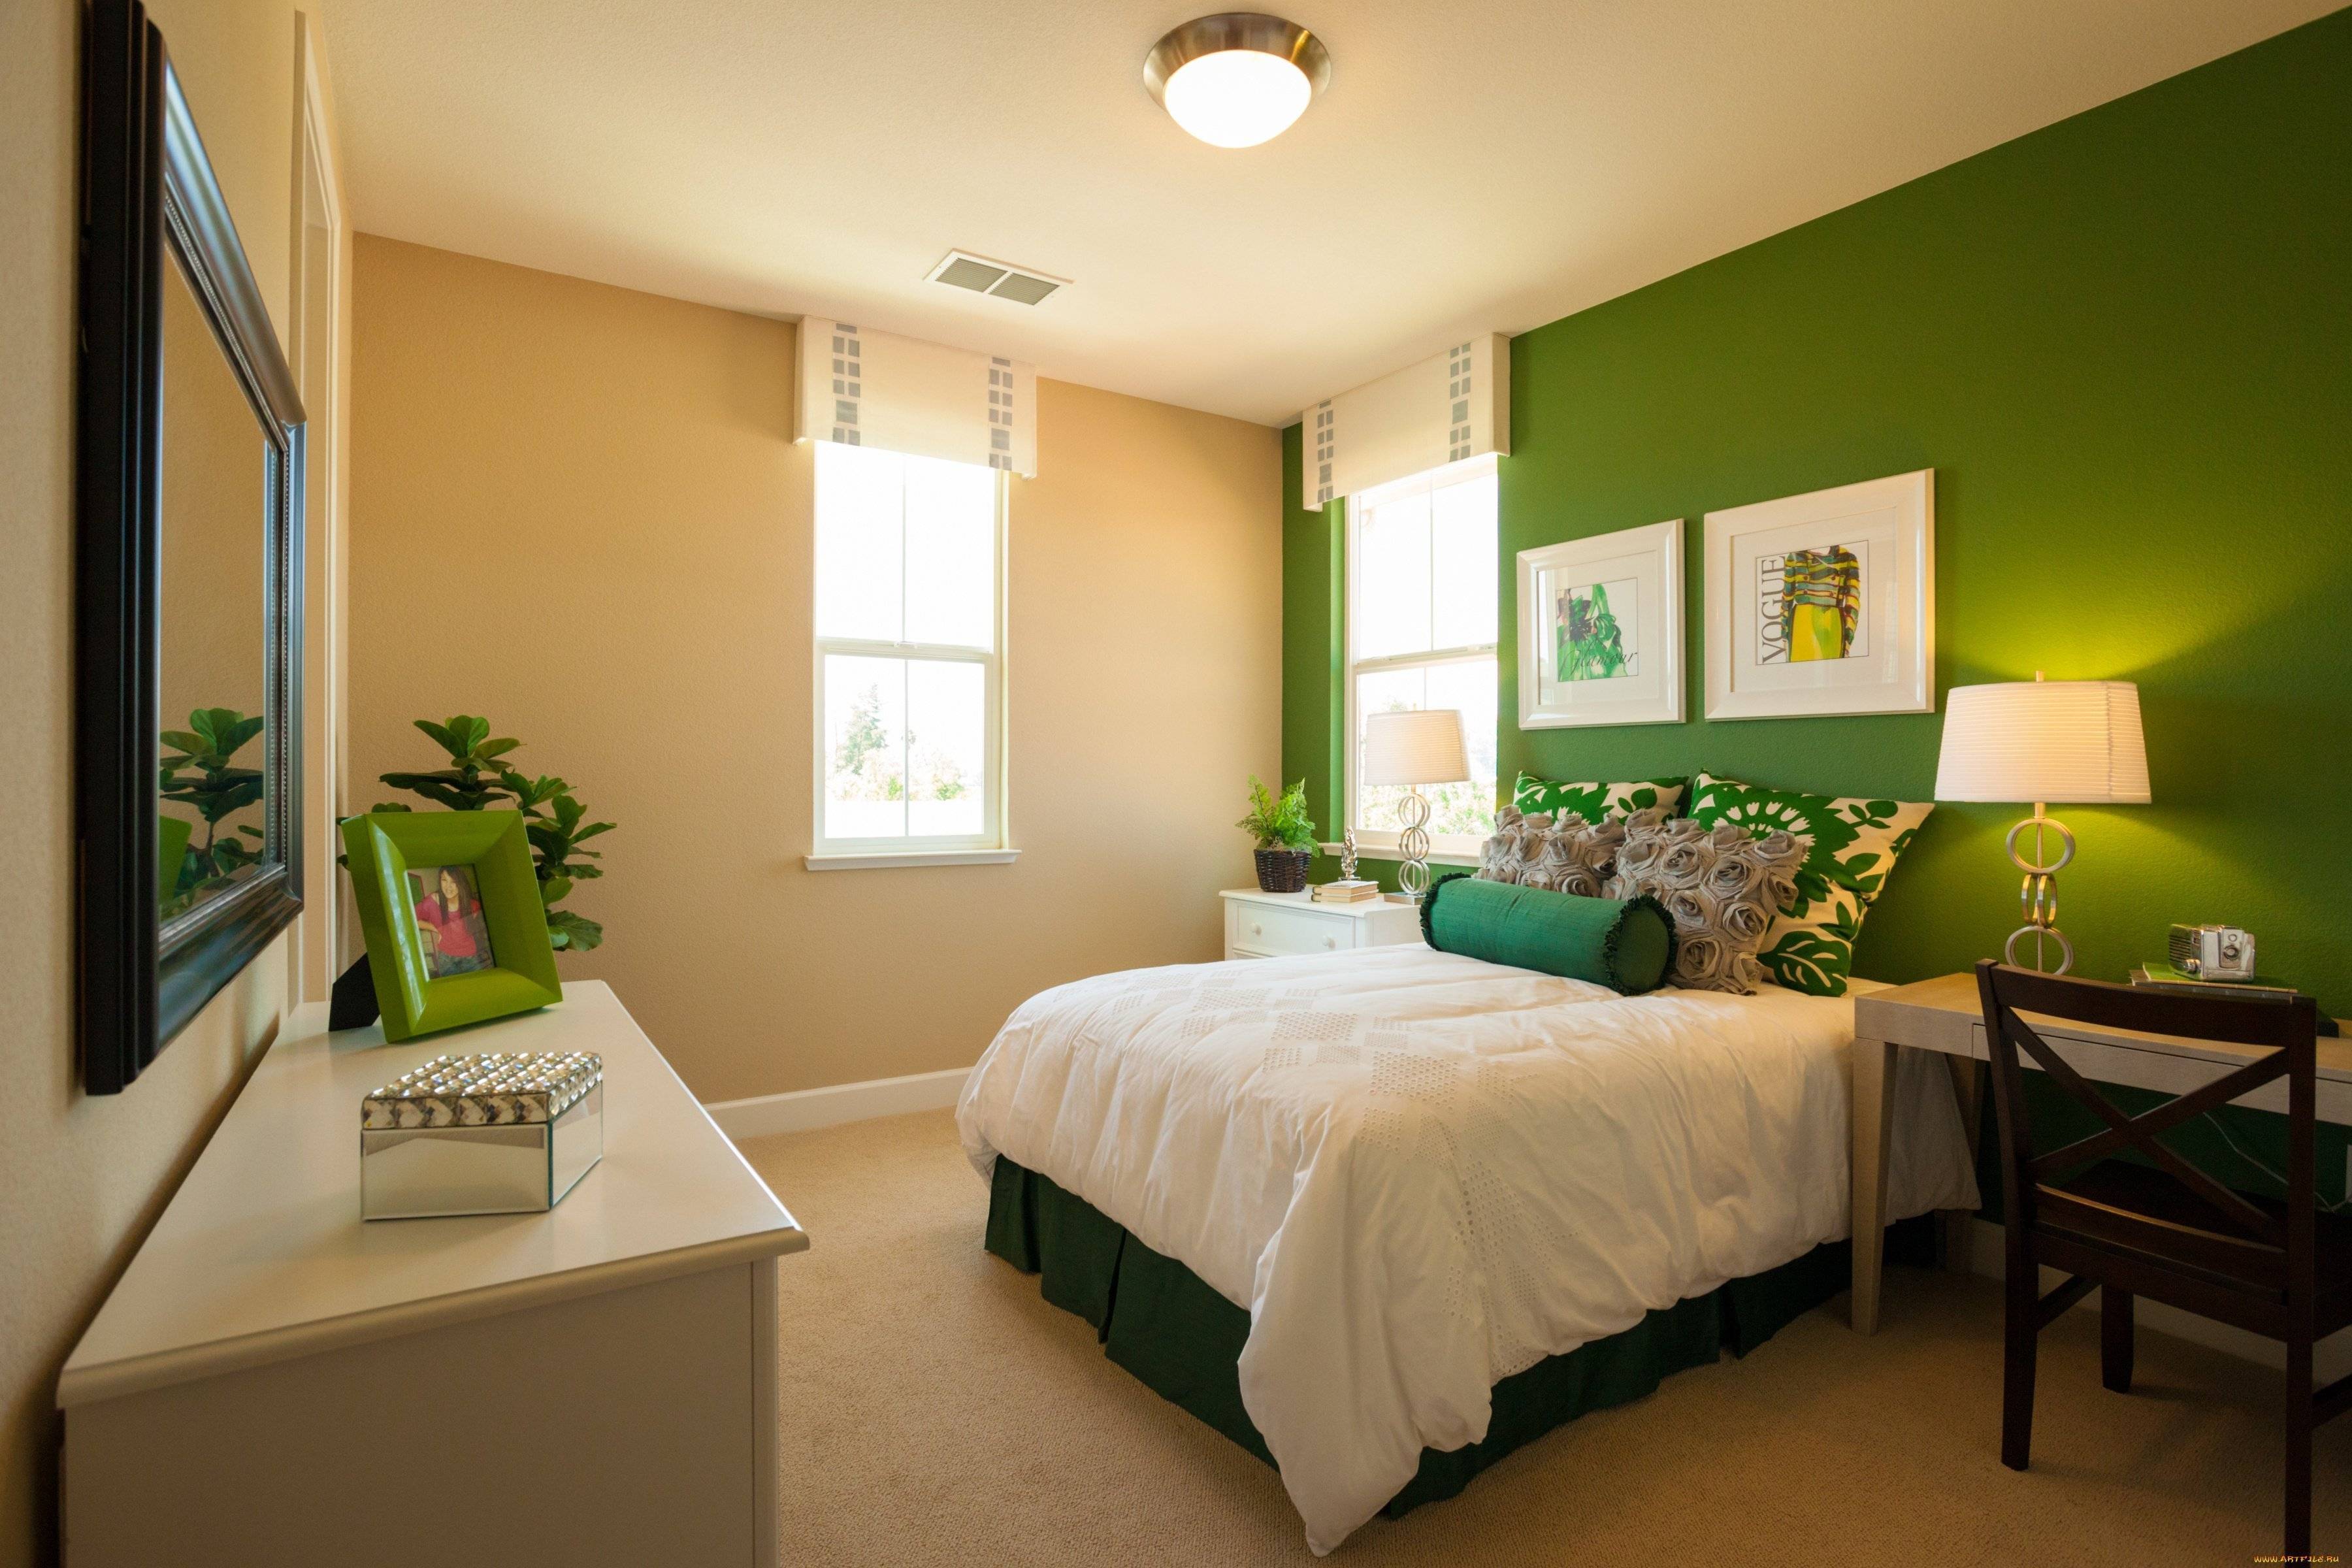 Зелено бежевые обои. Спальня в бежево зеленых тонах. Комната с зелеными стенами. Спальня в салатовых тонах. Зеленые обои в спальне.